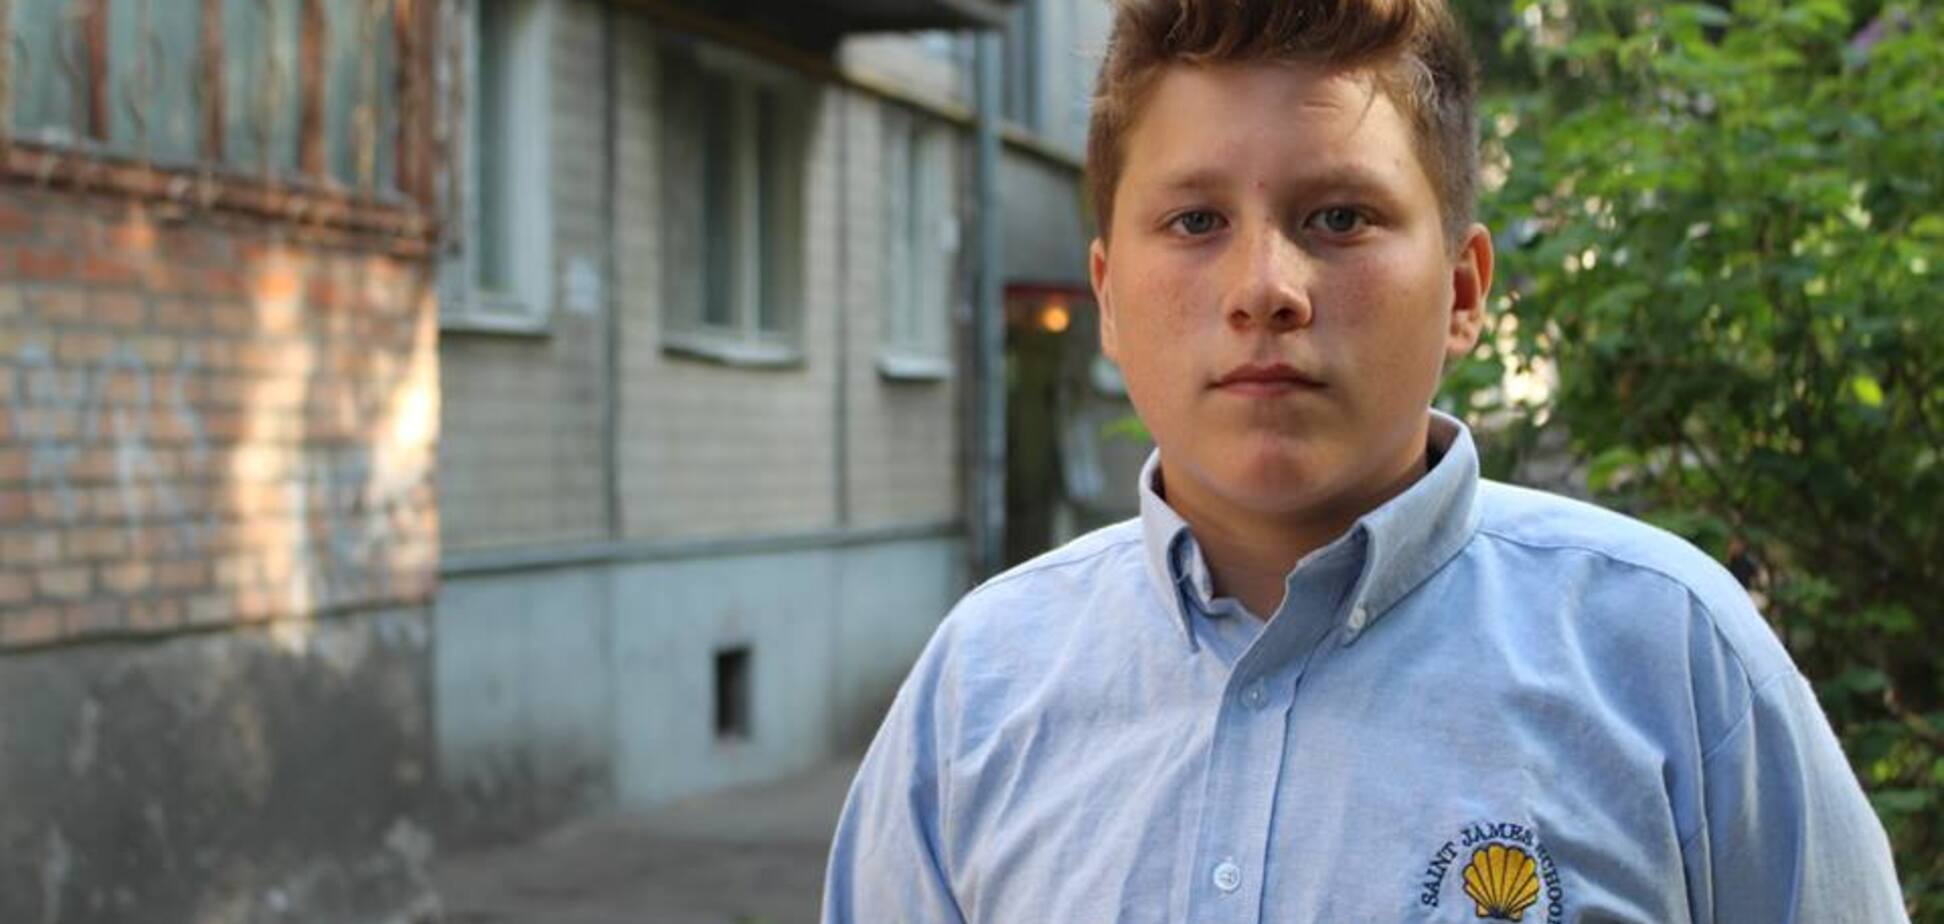 Спас весь дом: сеть поразил героизм ребенка в Киеве